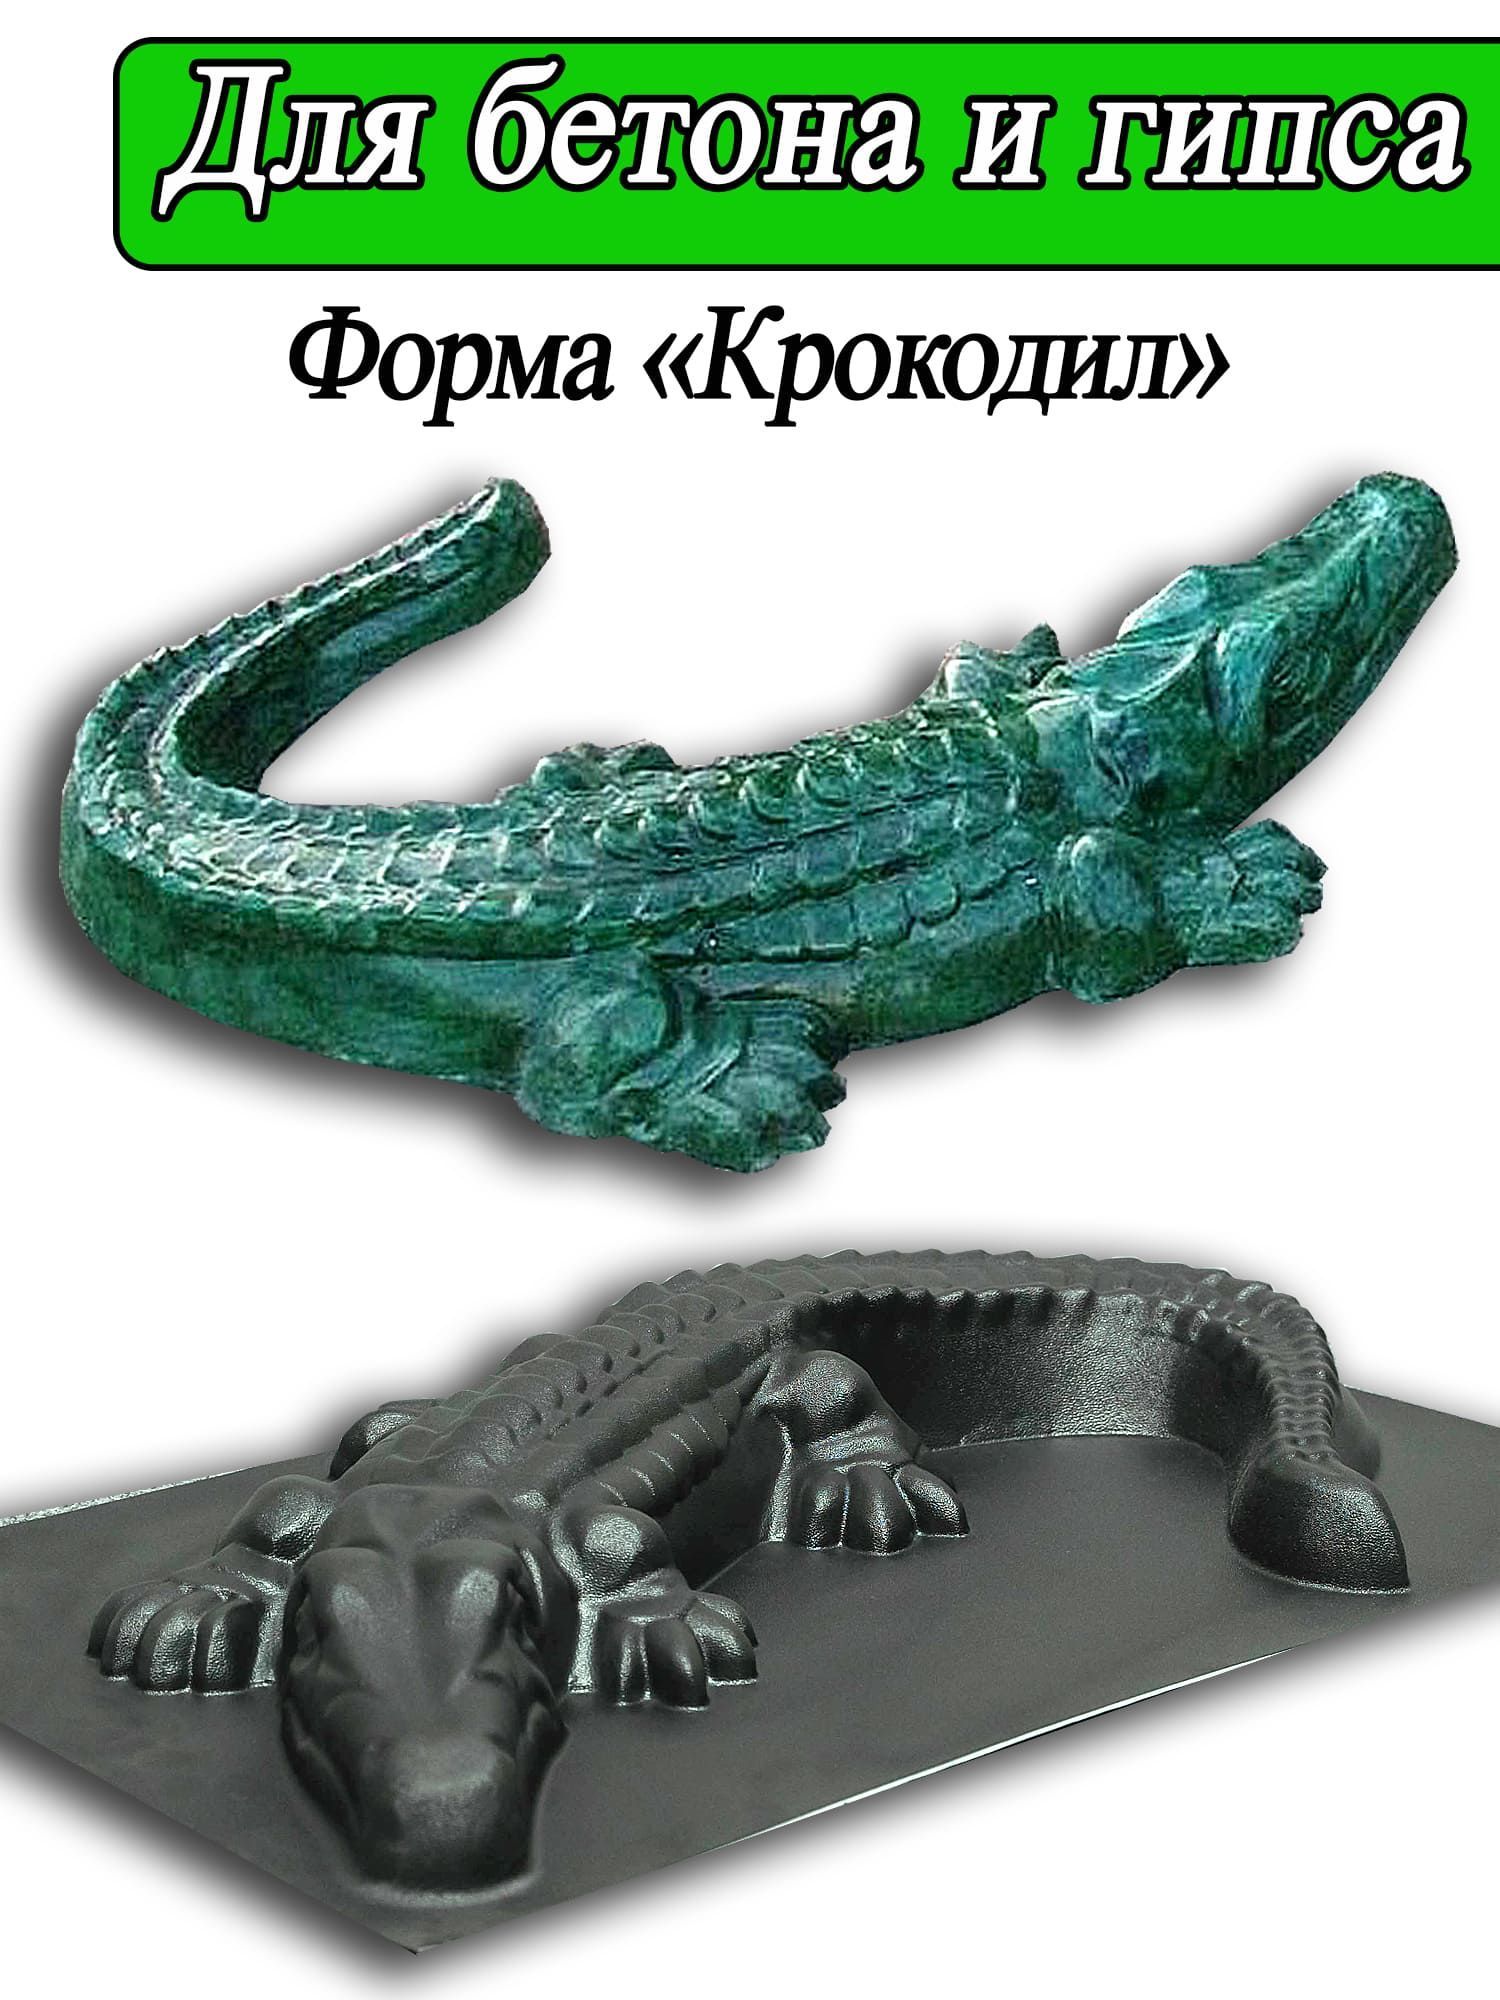 Поделки на праздники Как сделать крокодила из пластилина